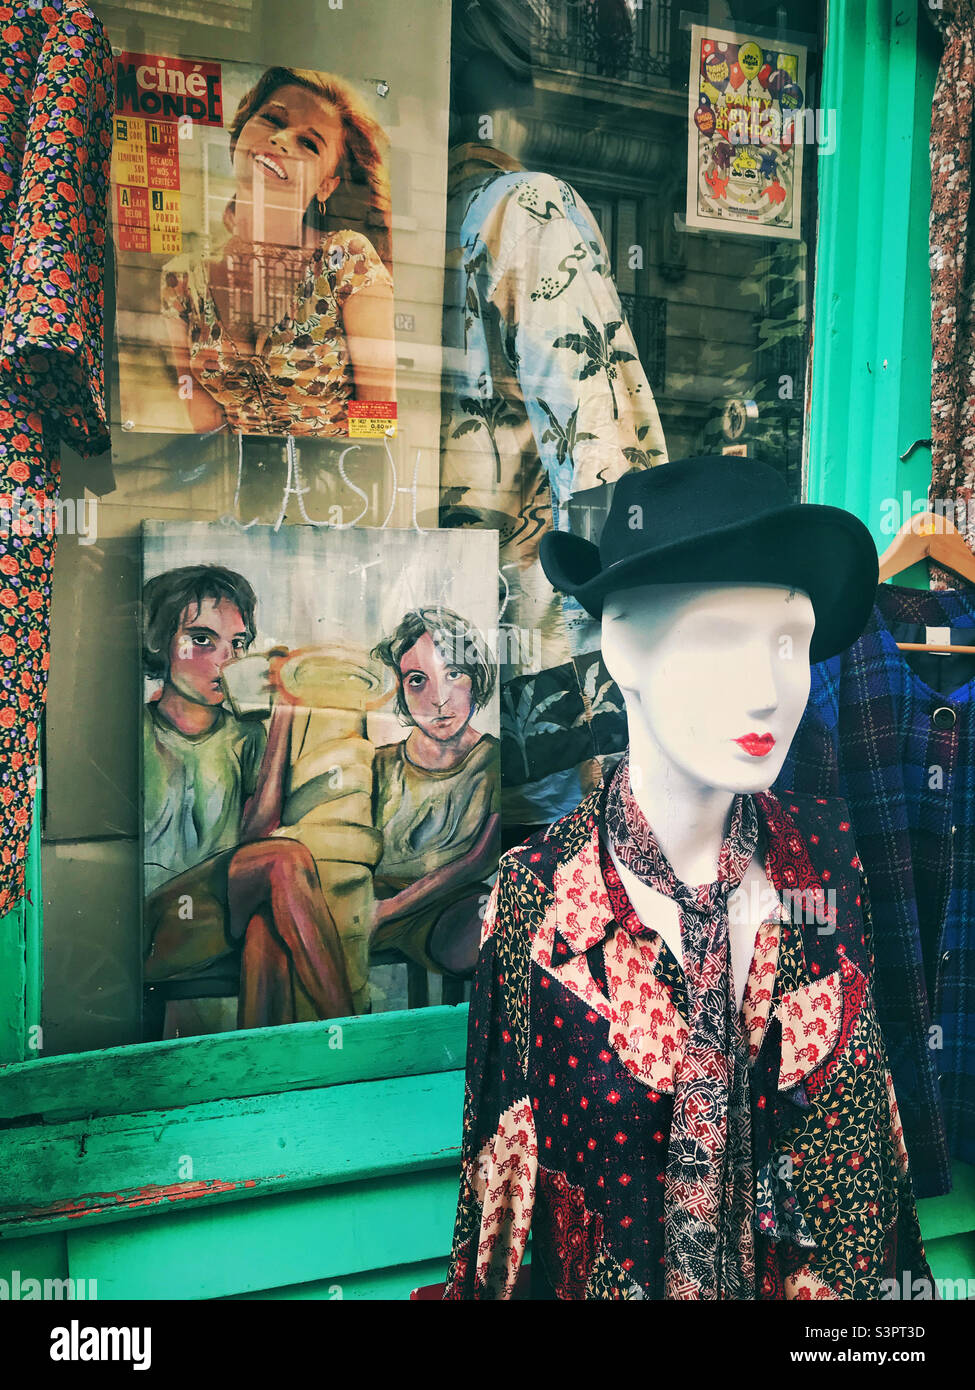 Un magasin de vêtements vintage typique à Paris, France Banque D'Images